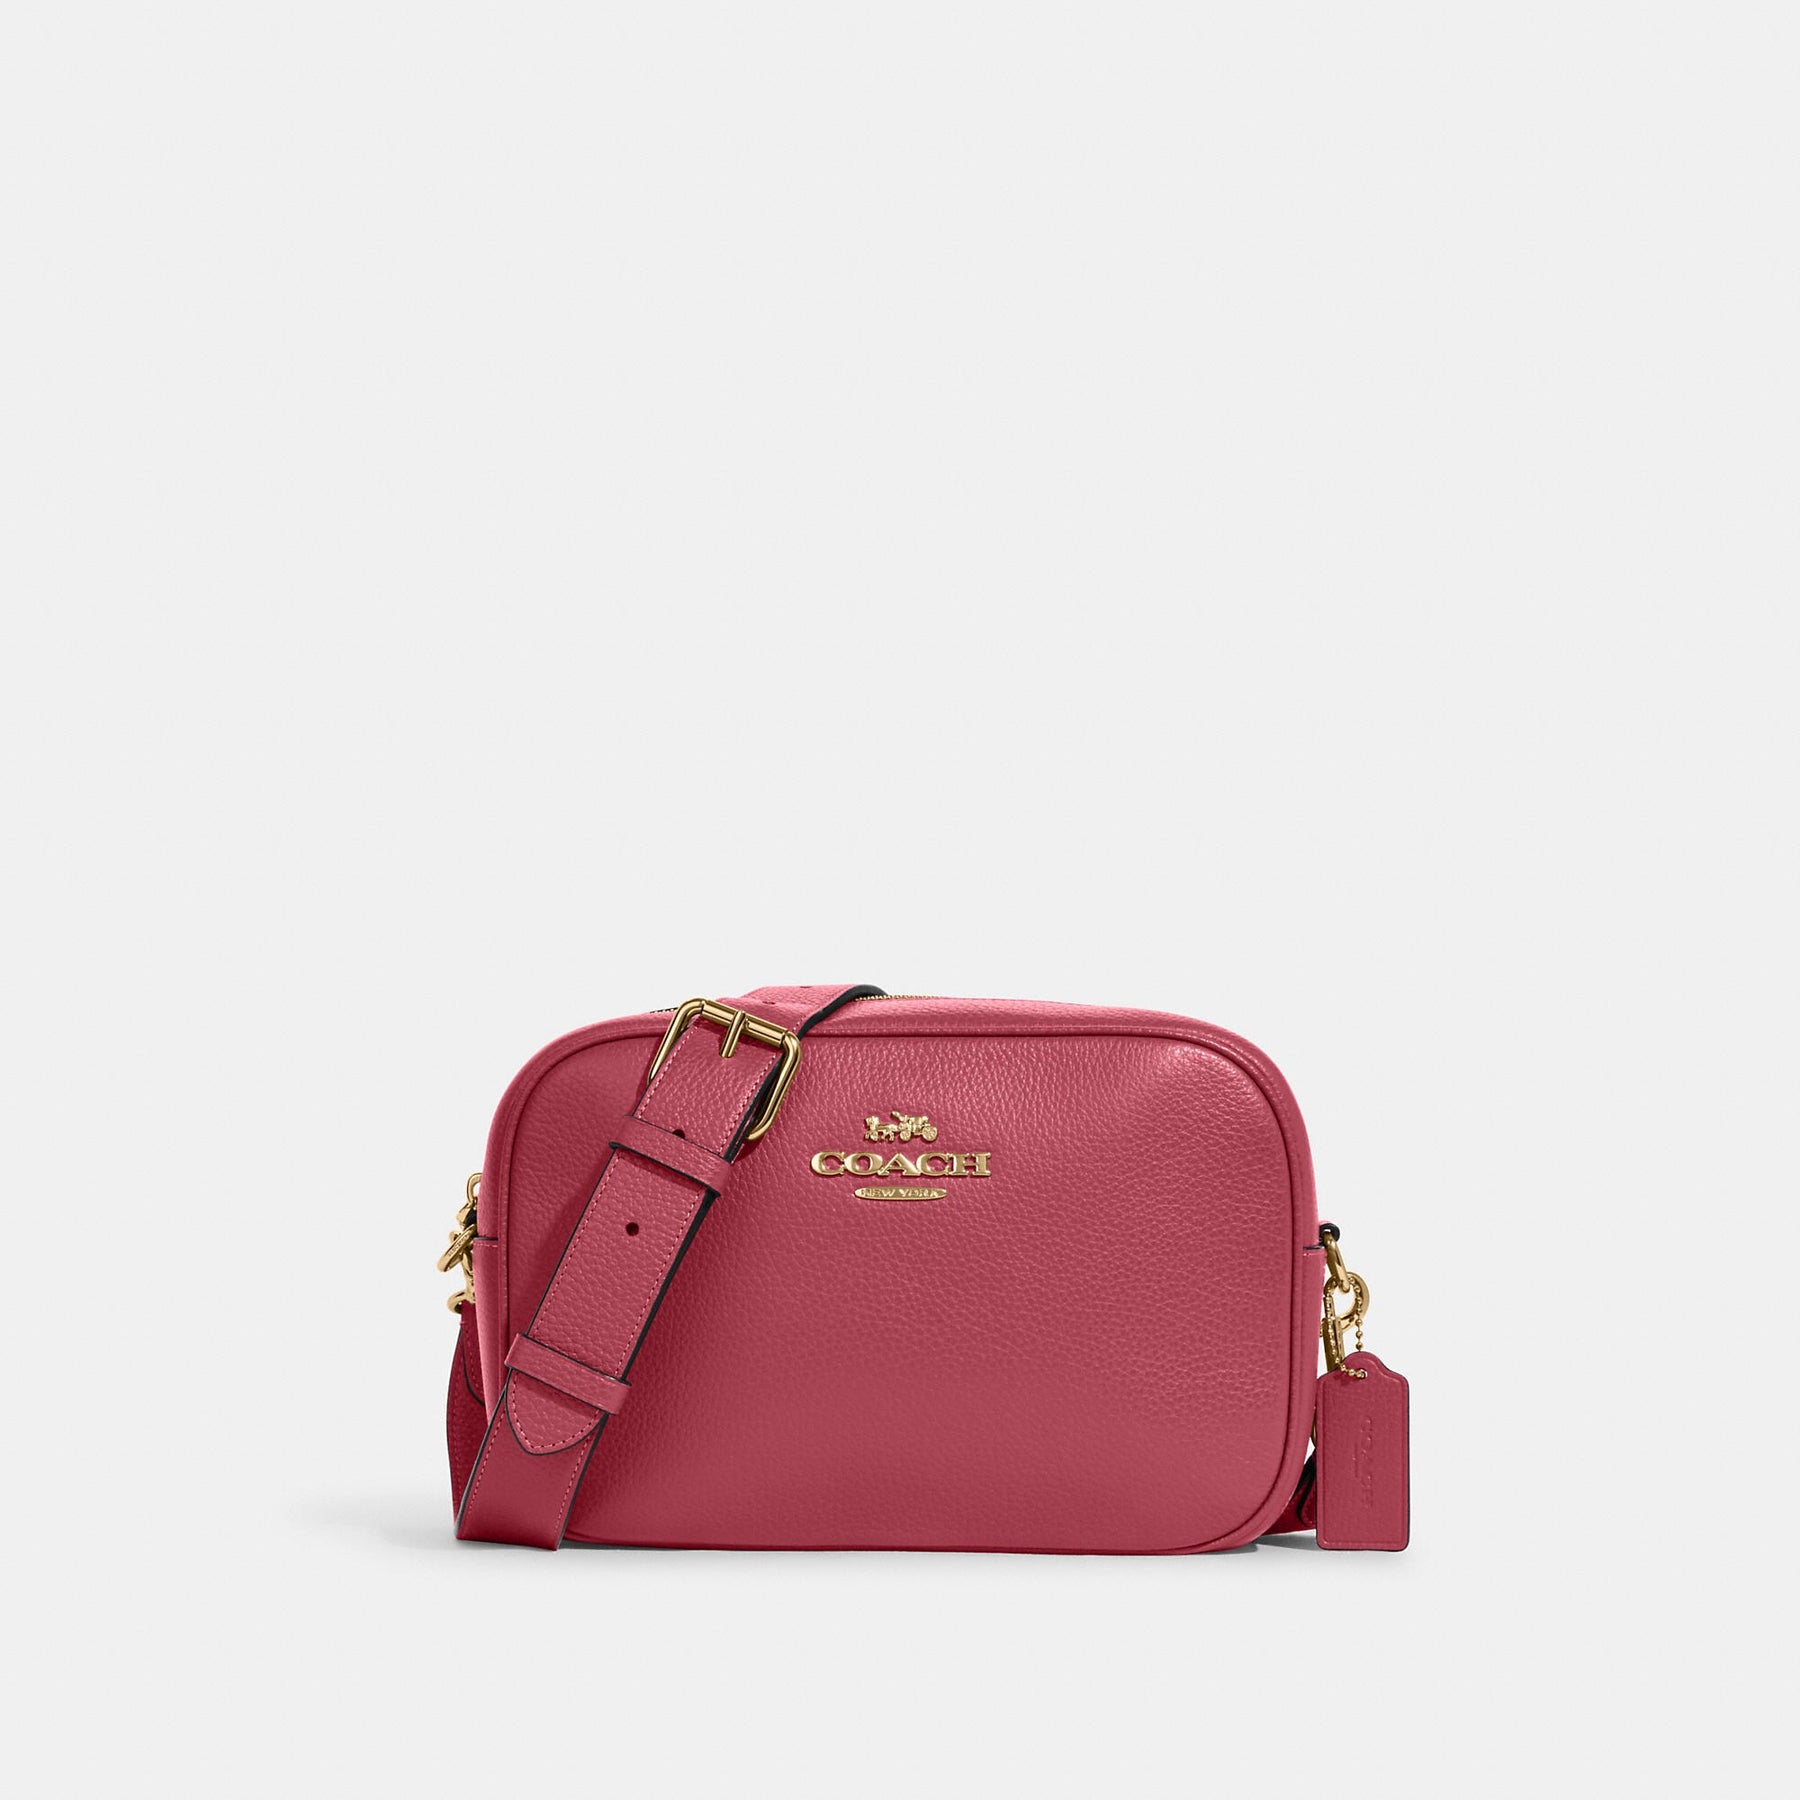 Crossbody Bags, Women's Handbags